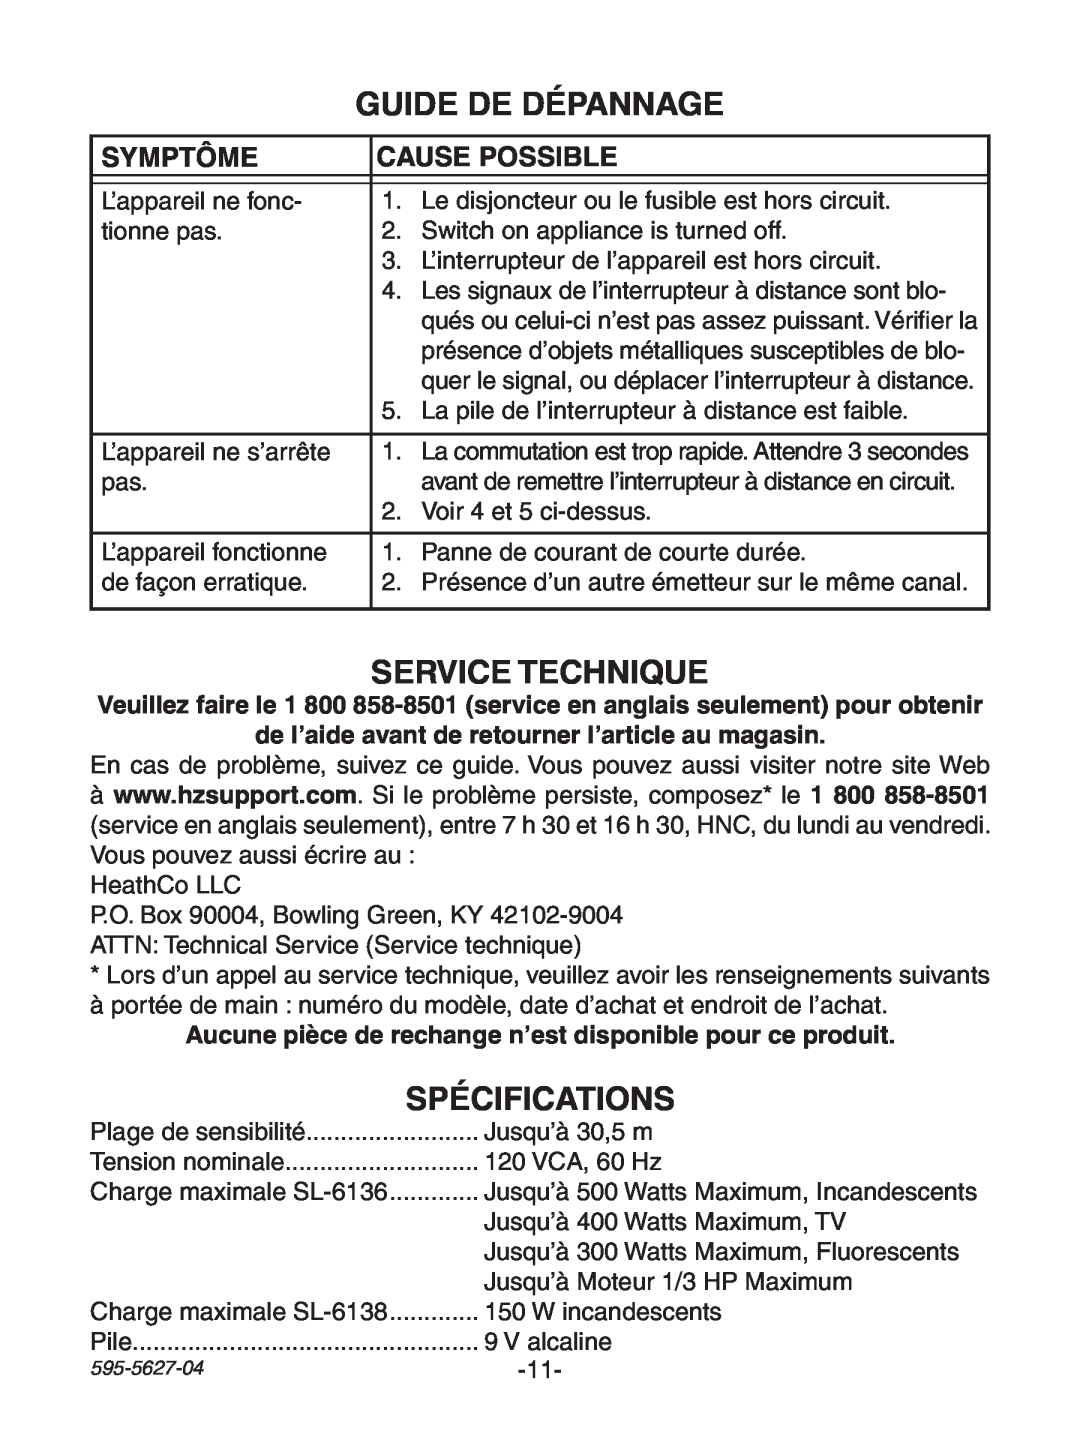 Heath Zenith 6138, 6136 manual Guide De Dépannage, Service Technique, Spécifications, Symptôme, Cause Possible 